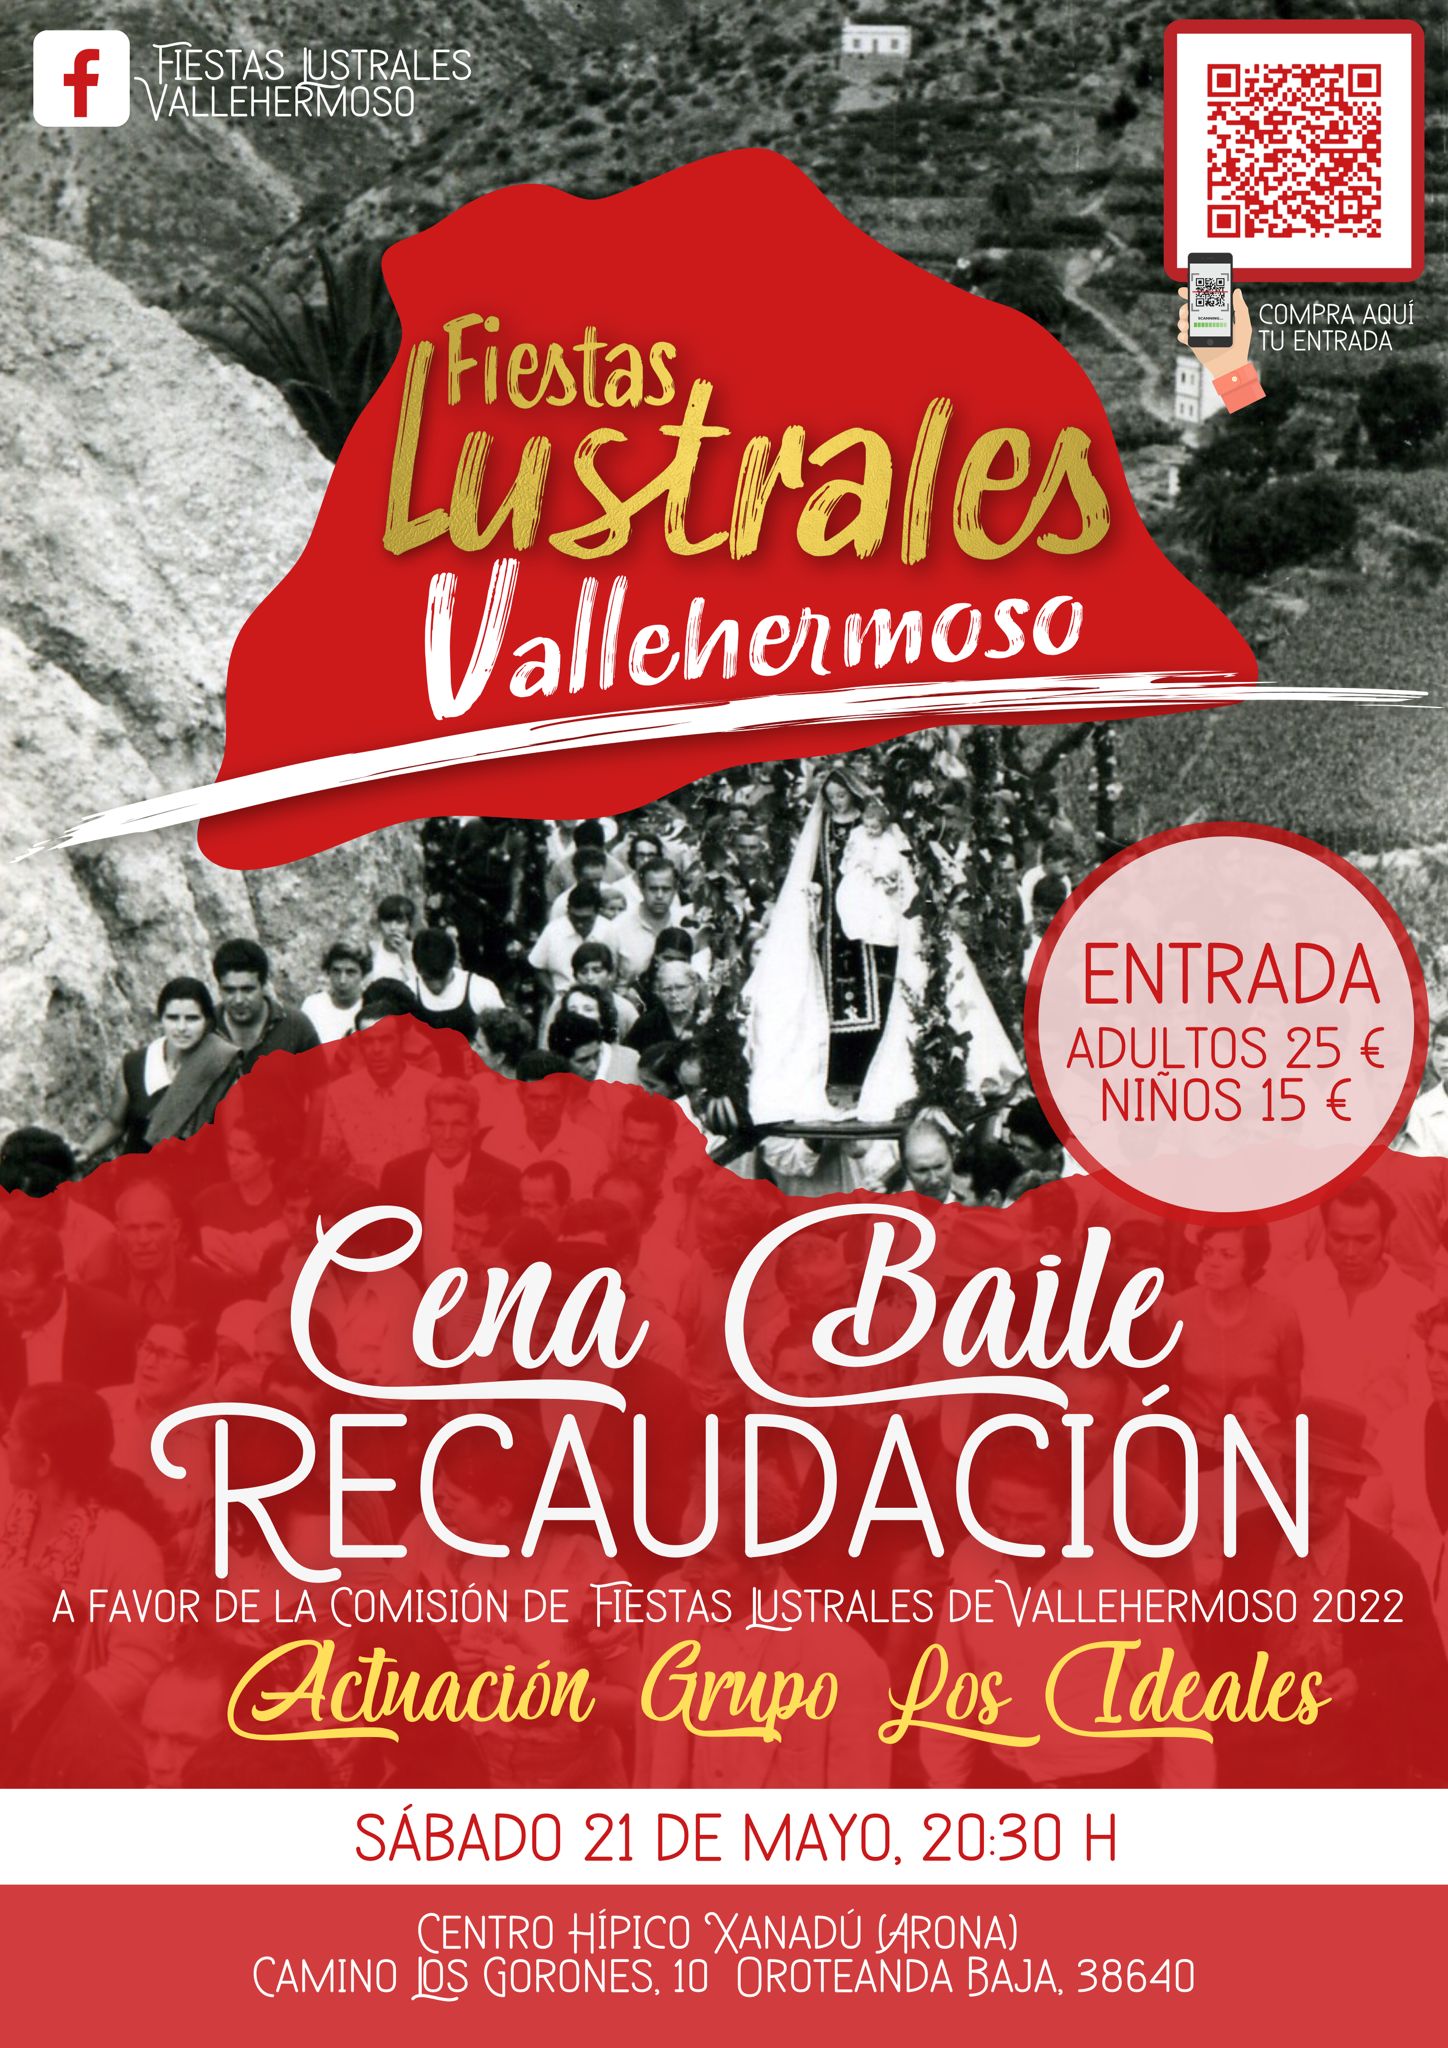 Tenerife acogerá la primera Cena Baile de recaudación de las Fiestas Lustrales de Vallehermoso